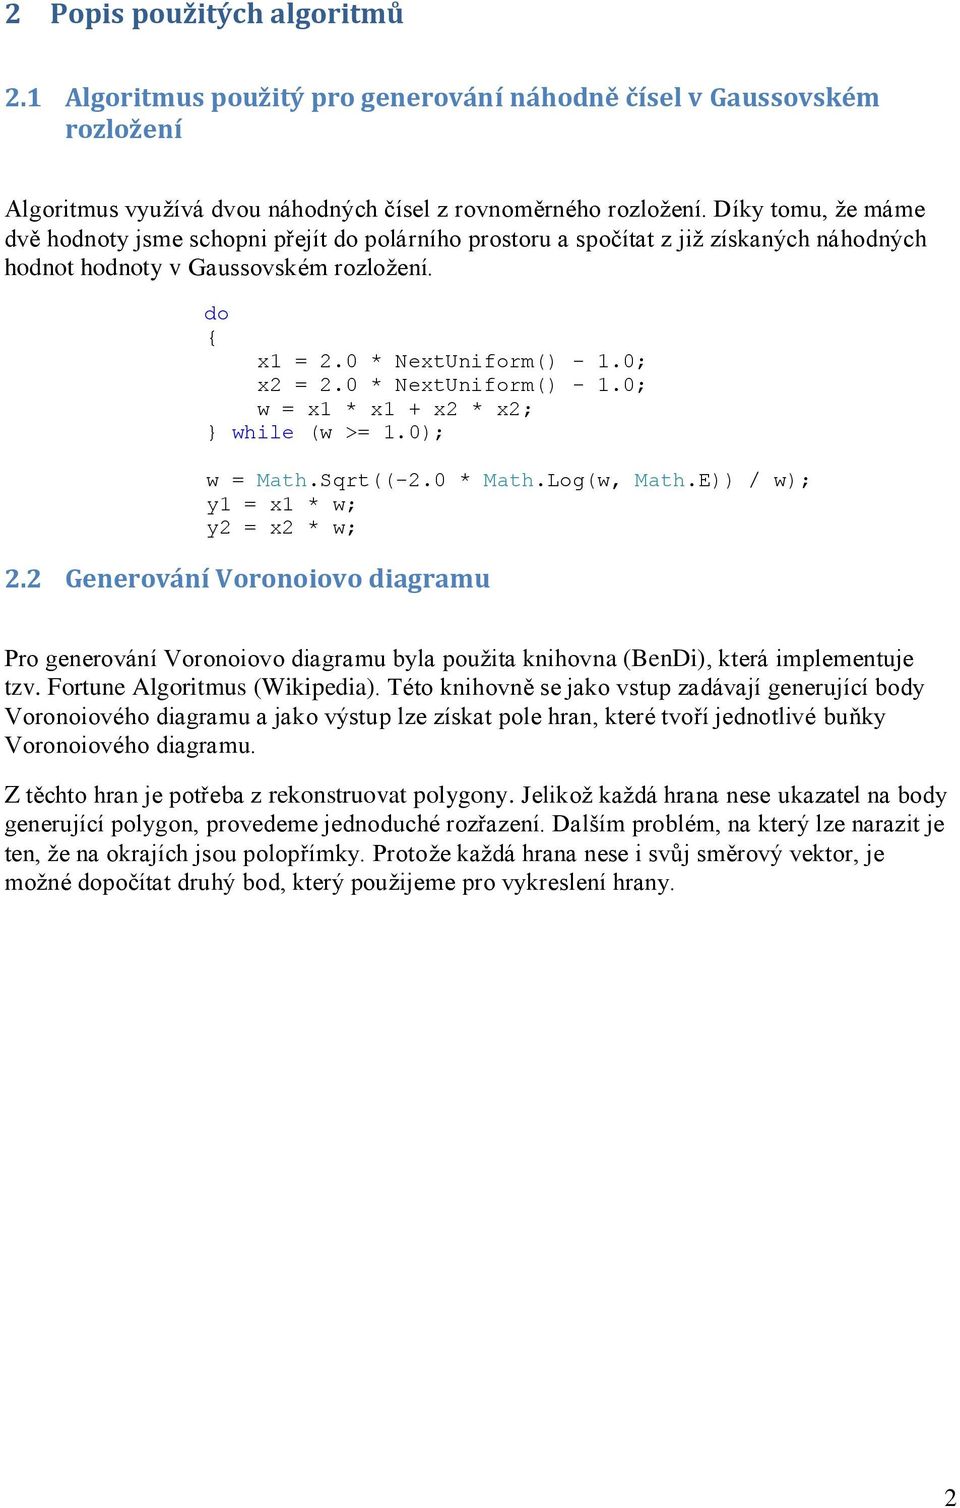 0 * NextUniform() - 1.0; w = x1 * x1 + x2 * x2; } while (w >= 1.0); w = Math.Sqrt((-2.0 * Math.Log(w, Math.E)) / w); y1 = x1 * w; y2 = x2 * w; 2.